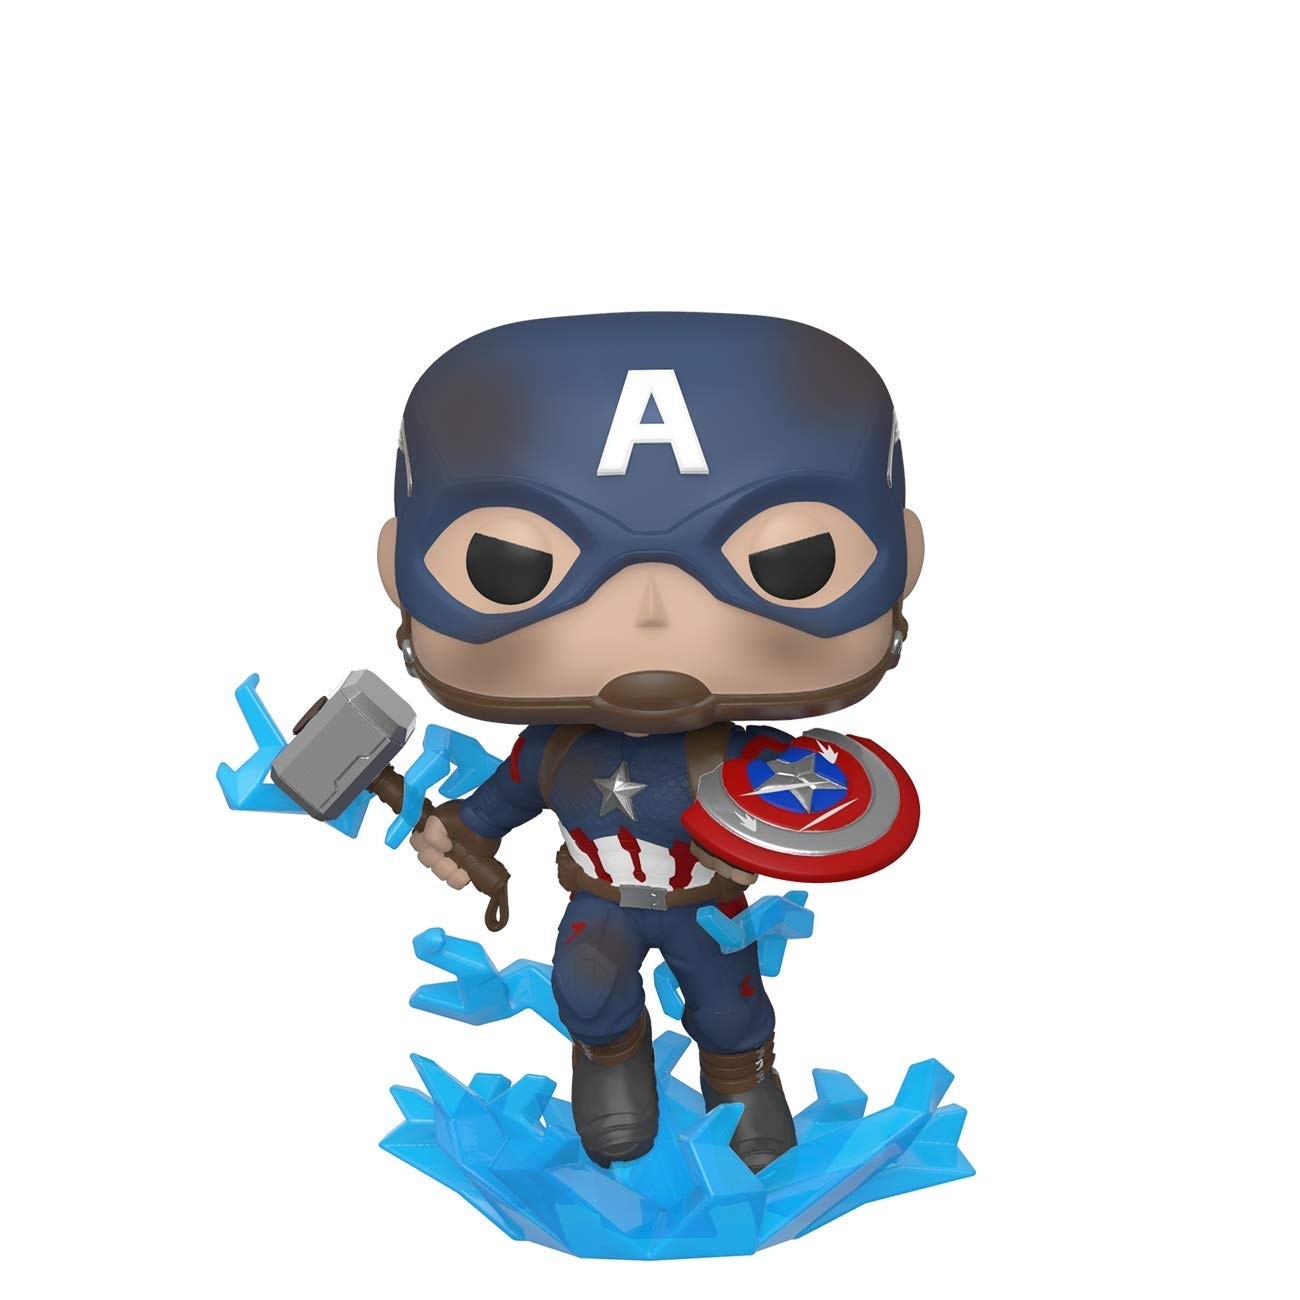 POP! Vinyl: Marvel: Avengers Endgame: Captain America with Broken Shield & Mjolnir